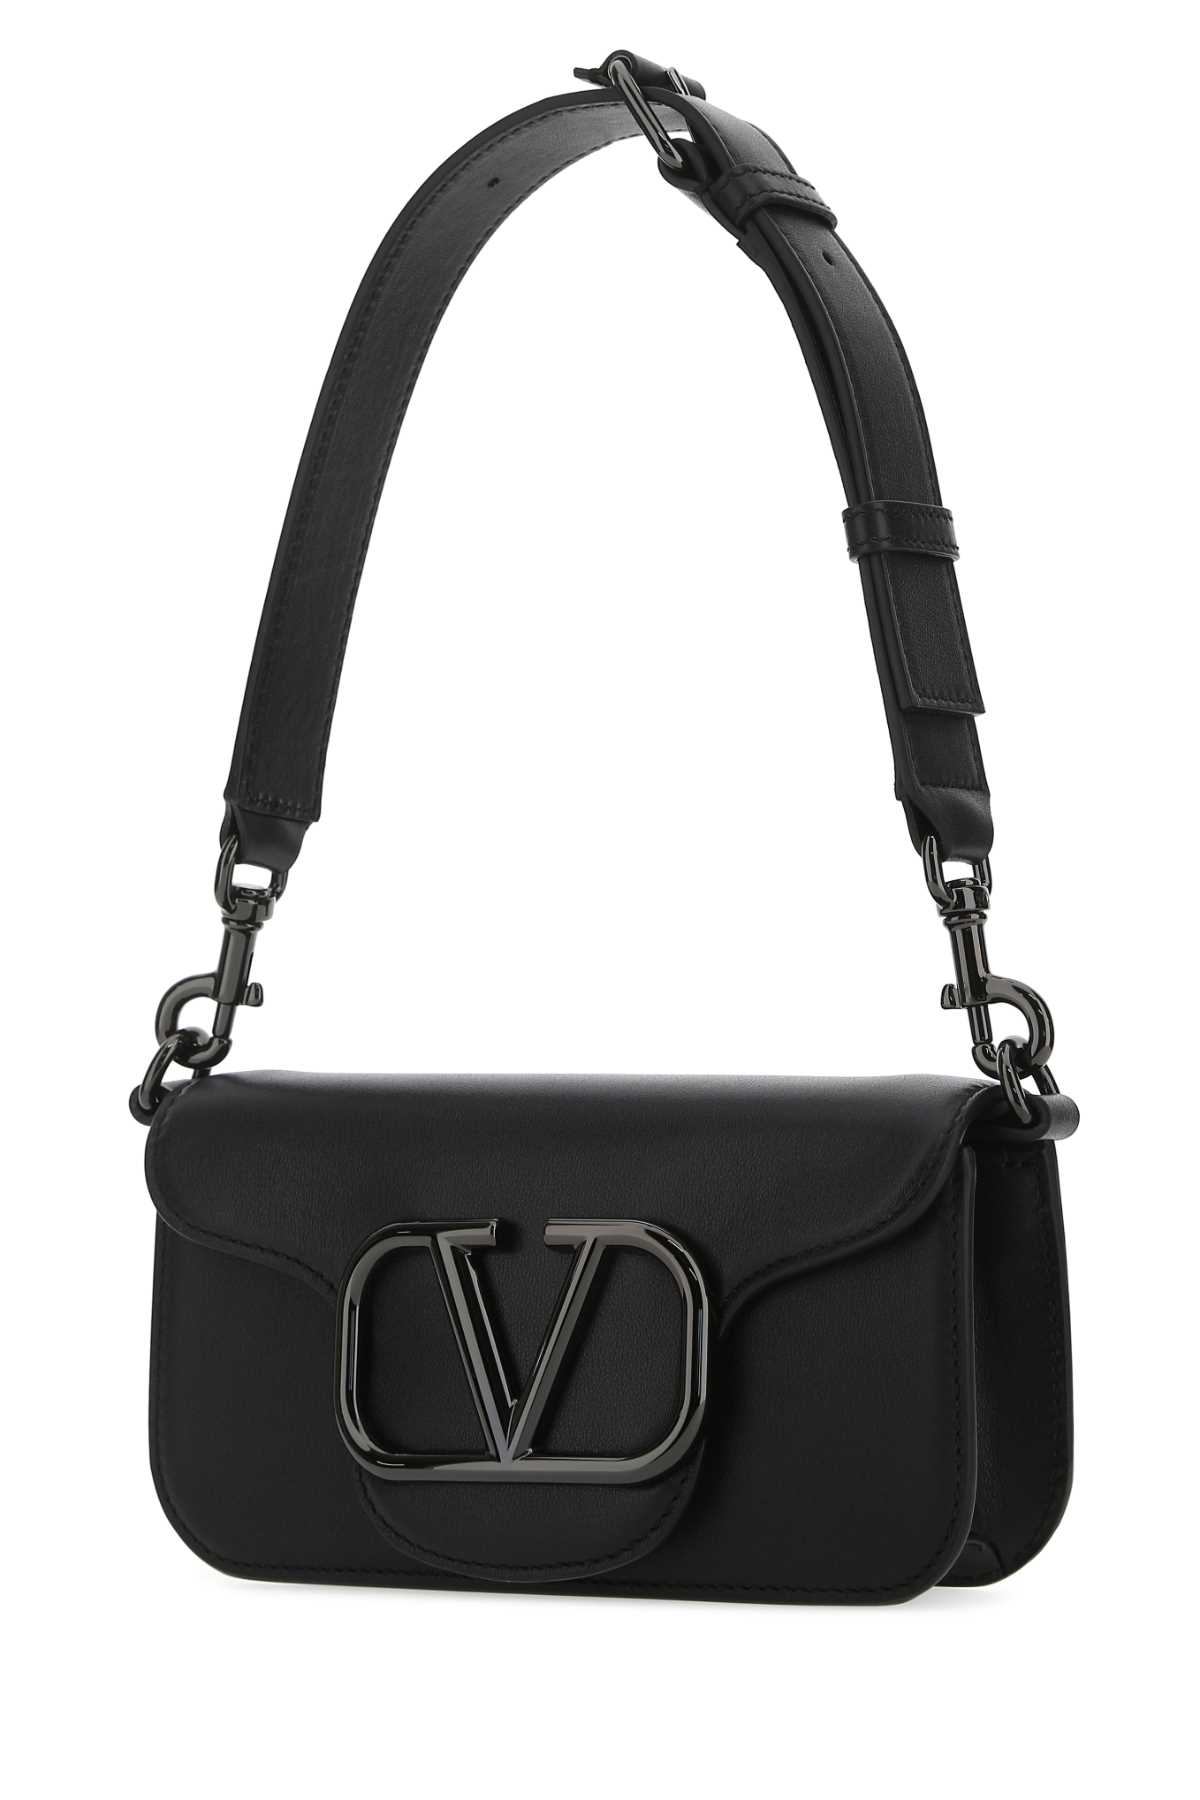 Valentino Garavani Black Leather Locã² Shoulder Bag In Nero